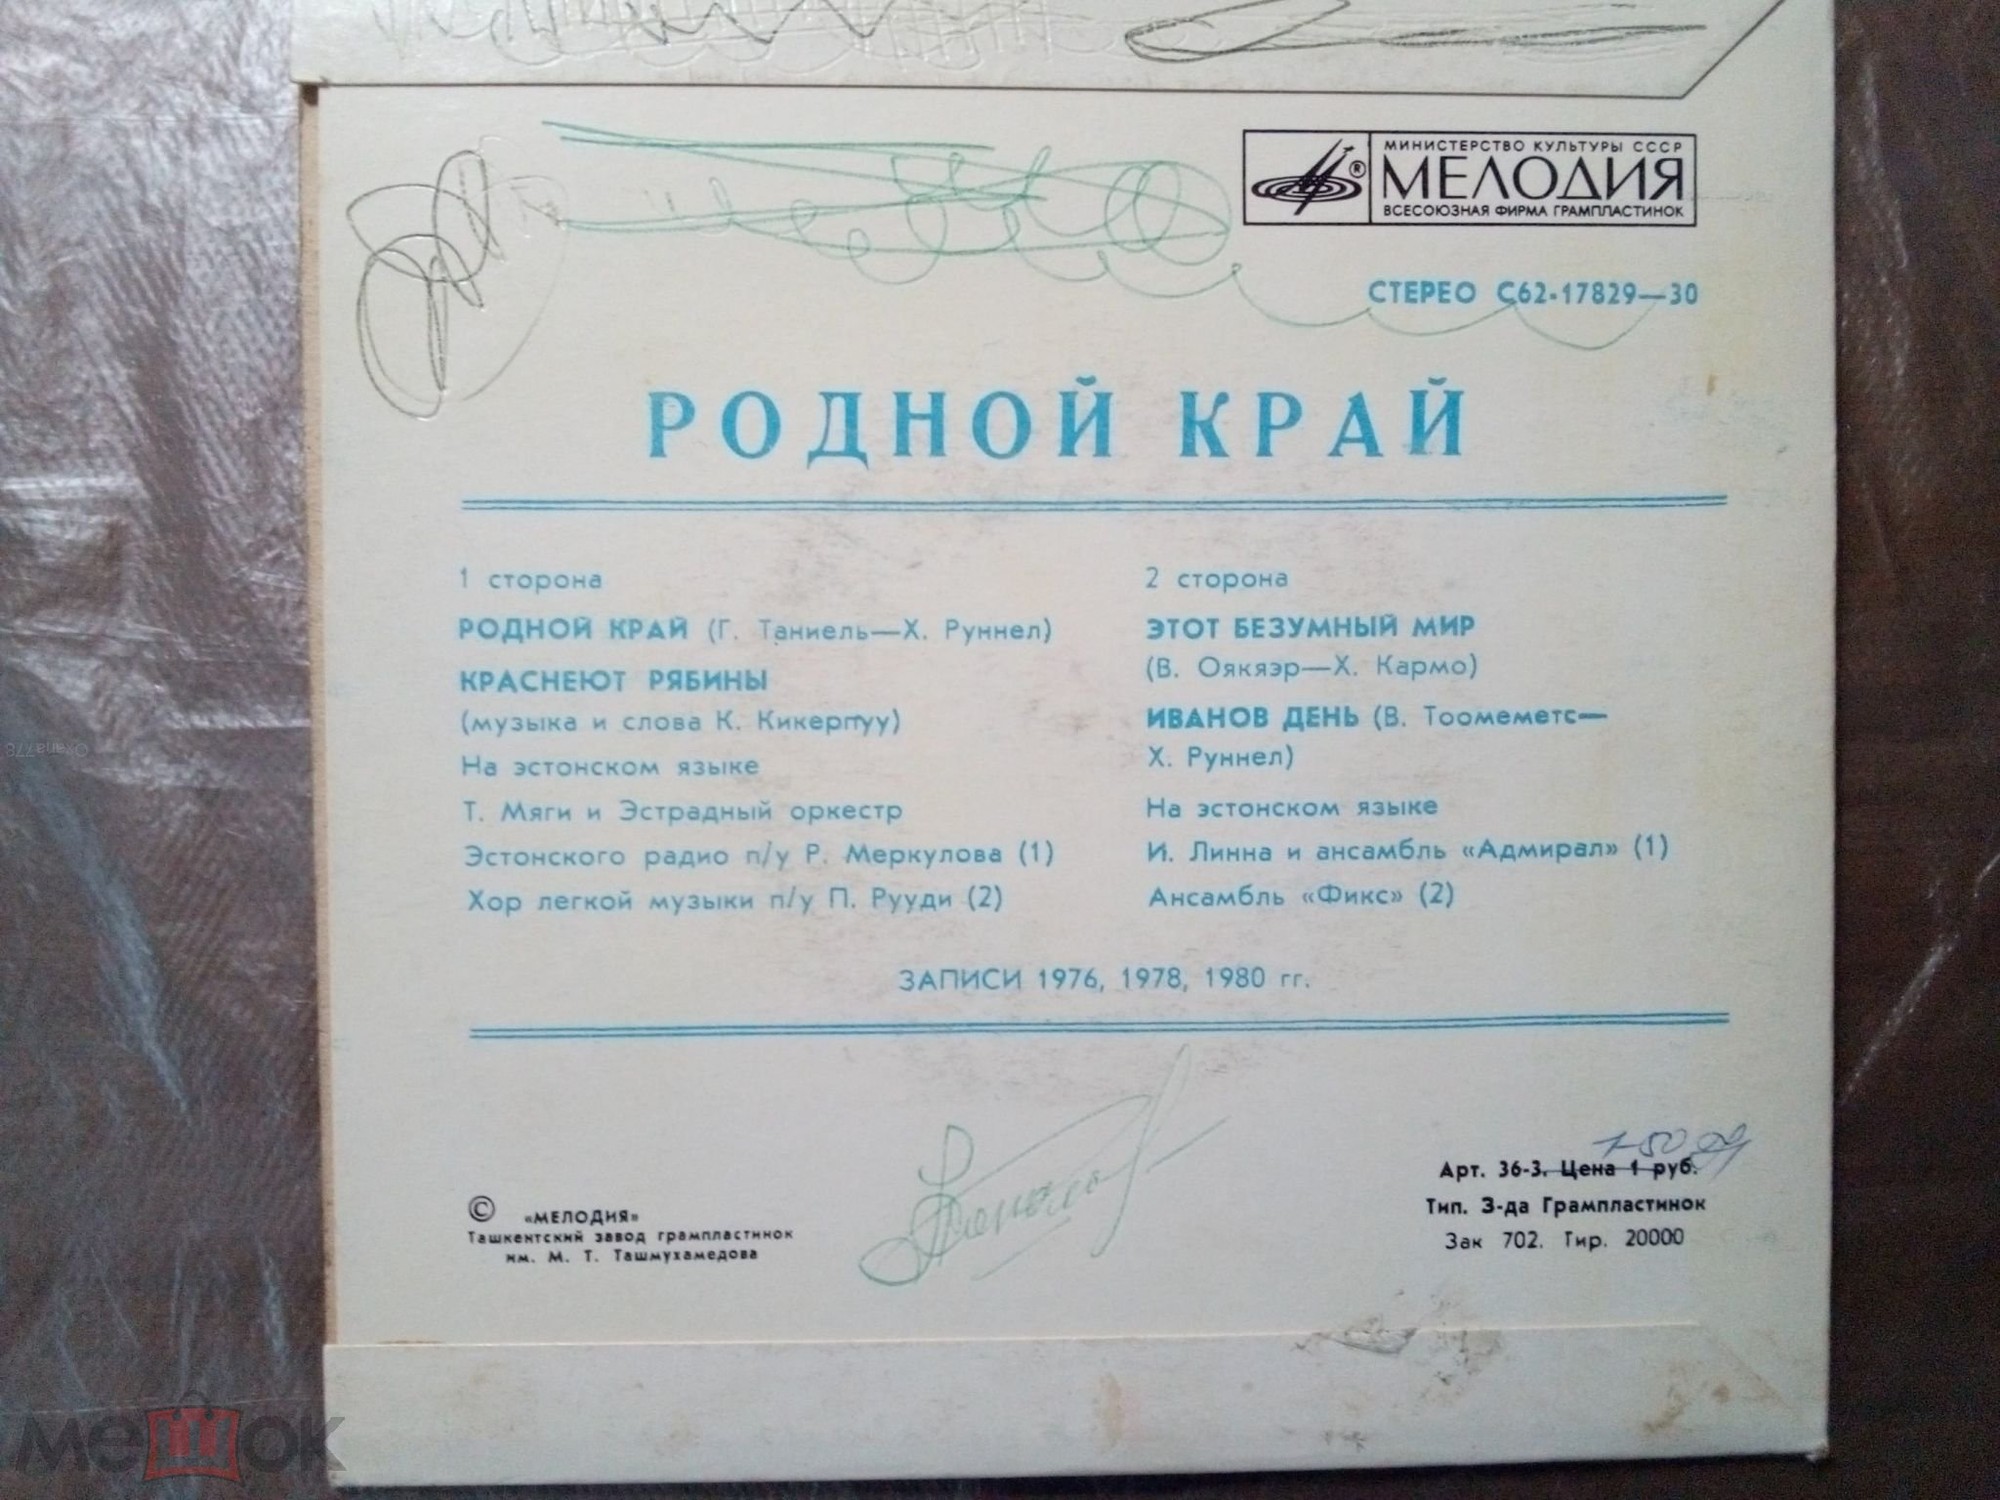 РОДНОЙ КРАЙ – премия совхоза "Ранна" за лучшую песню 1977-1981 годов